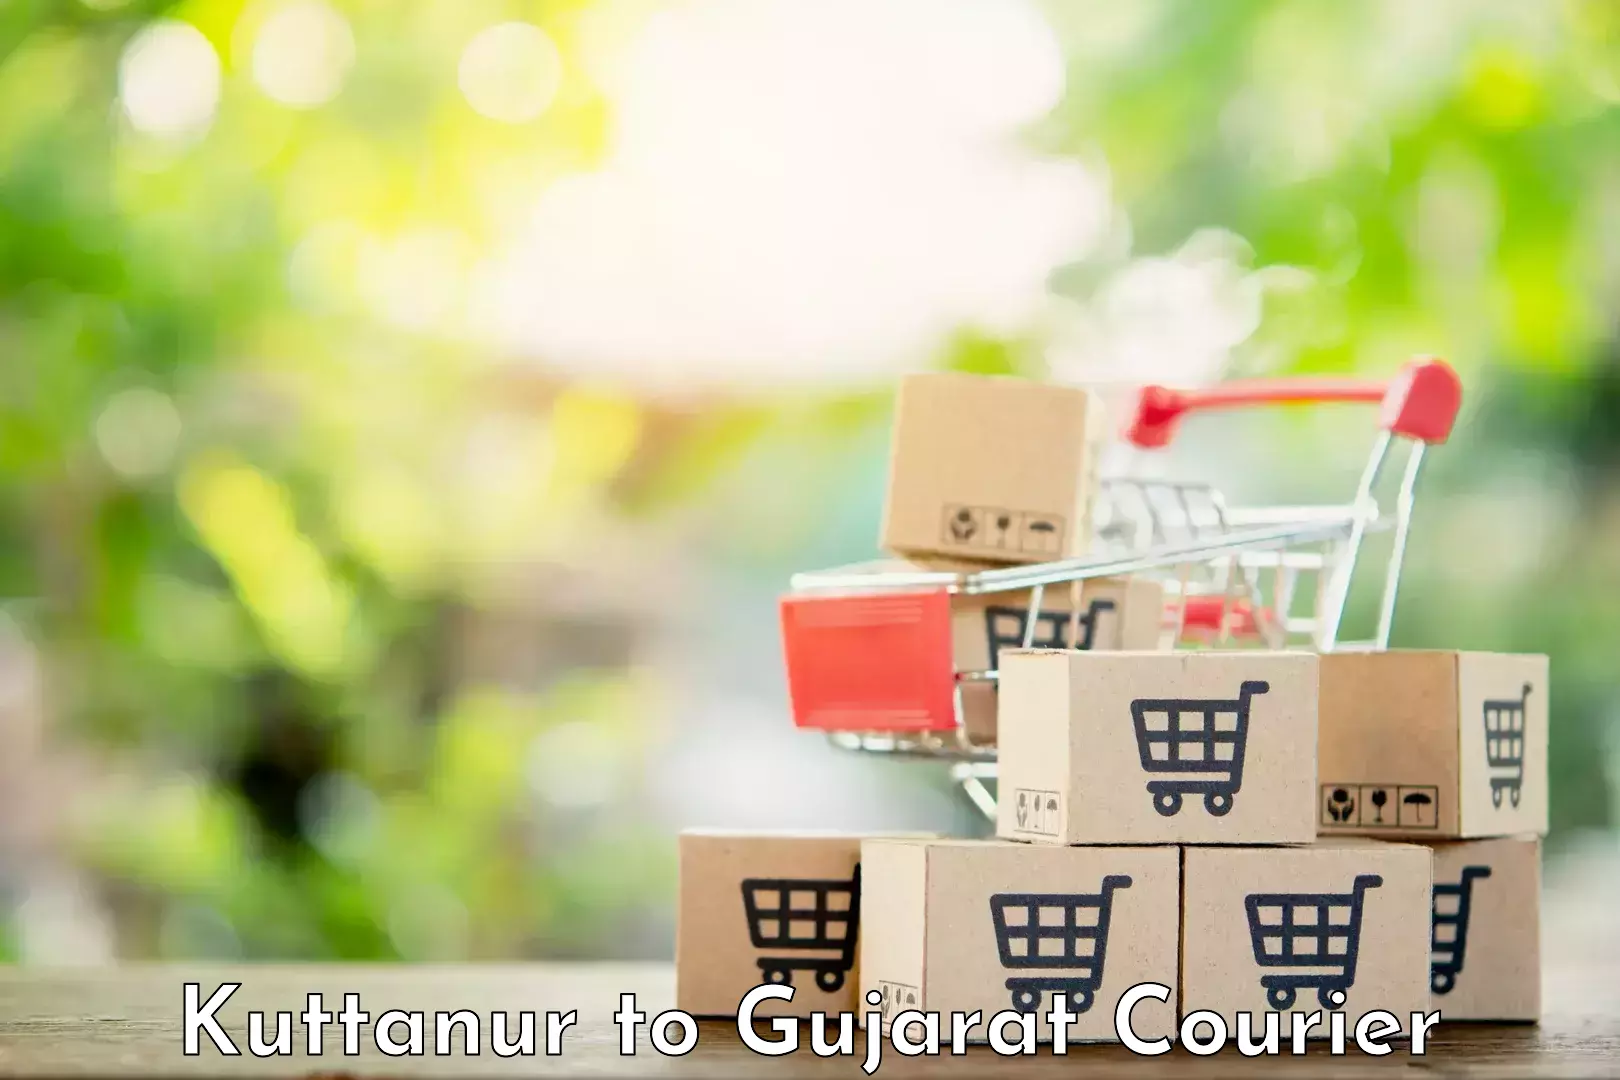 Online courier booking Kuttanur to Gujarat